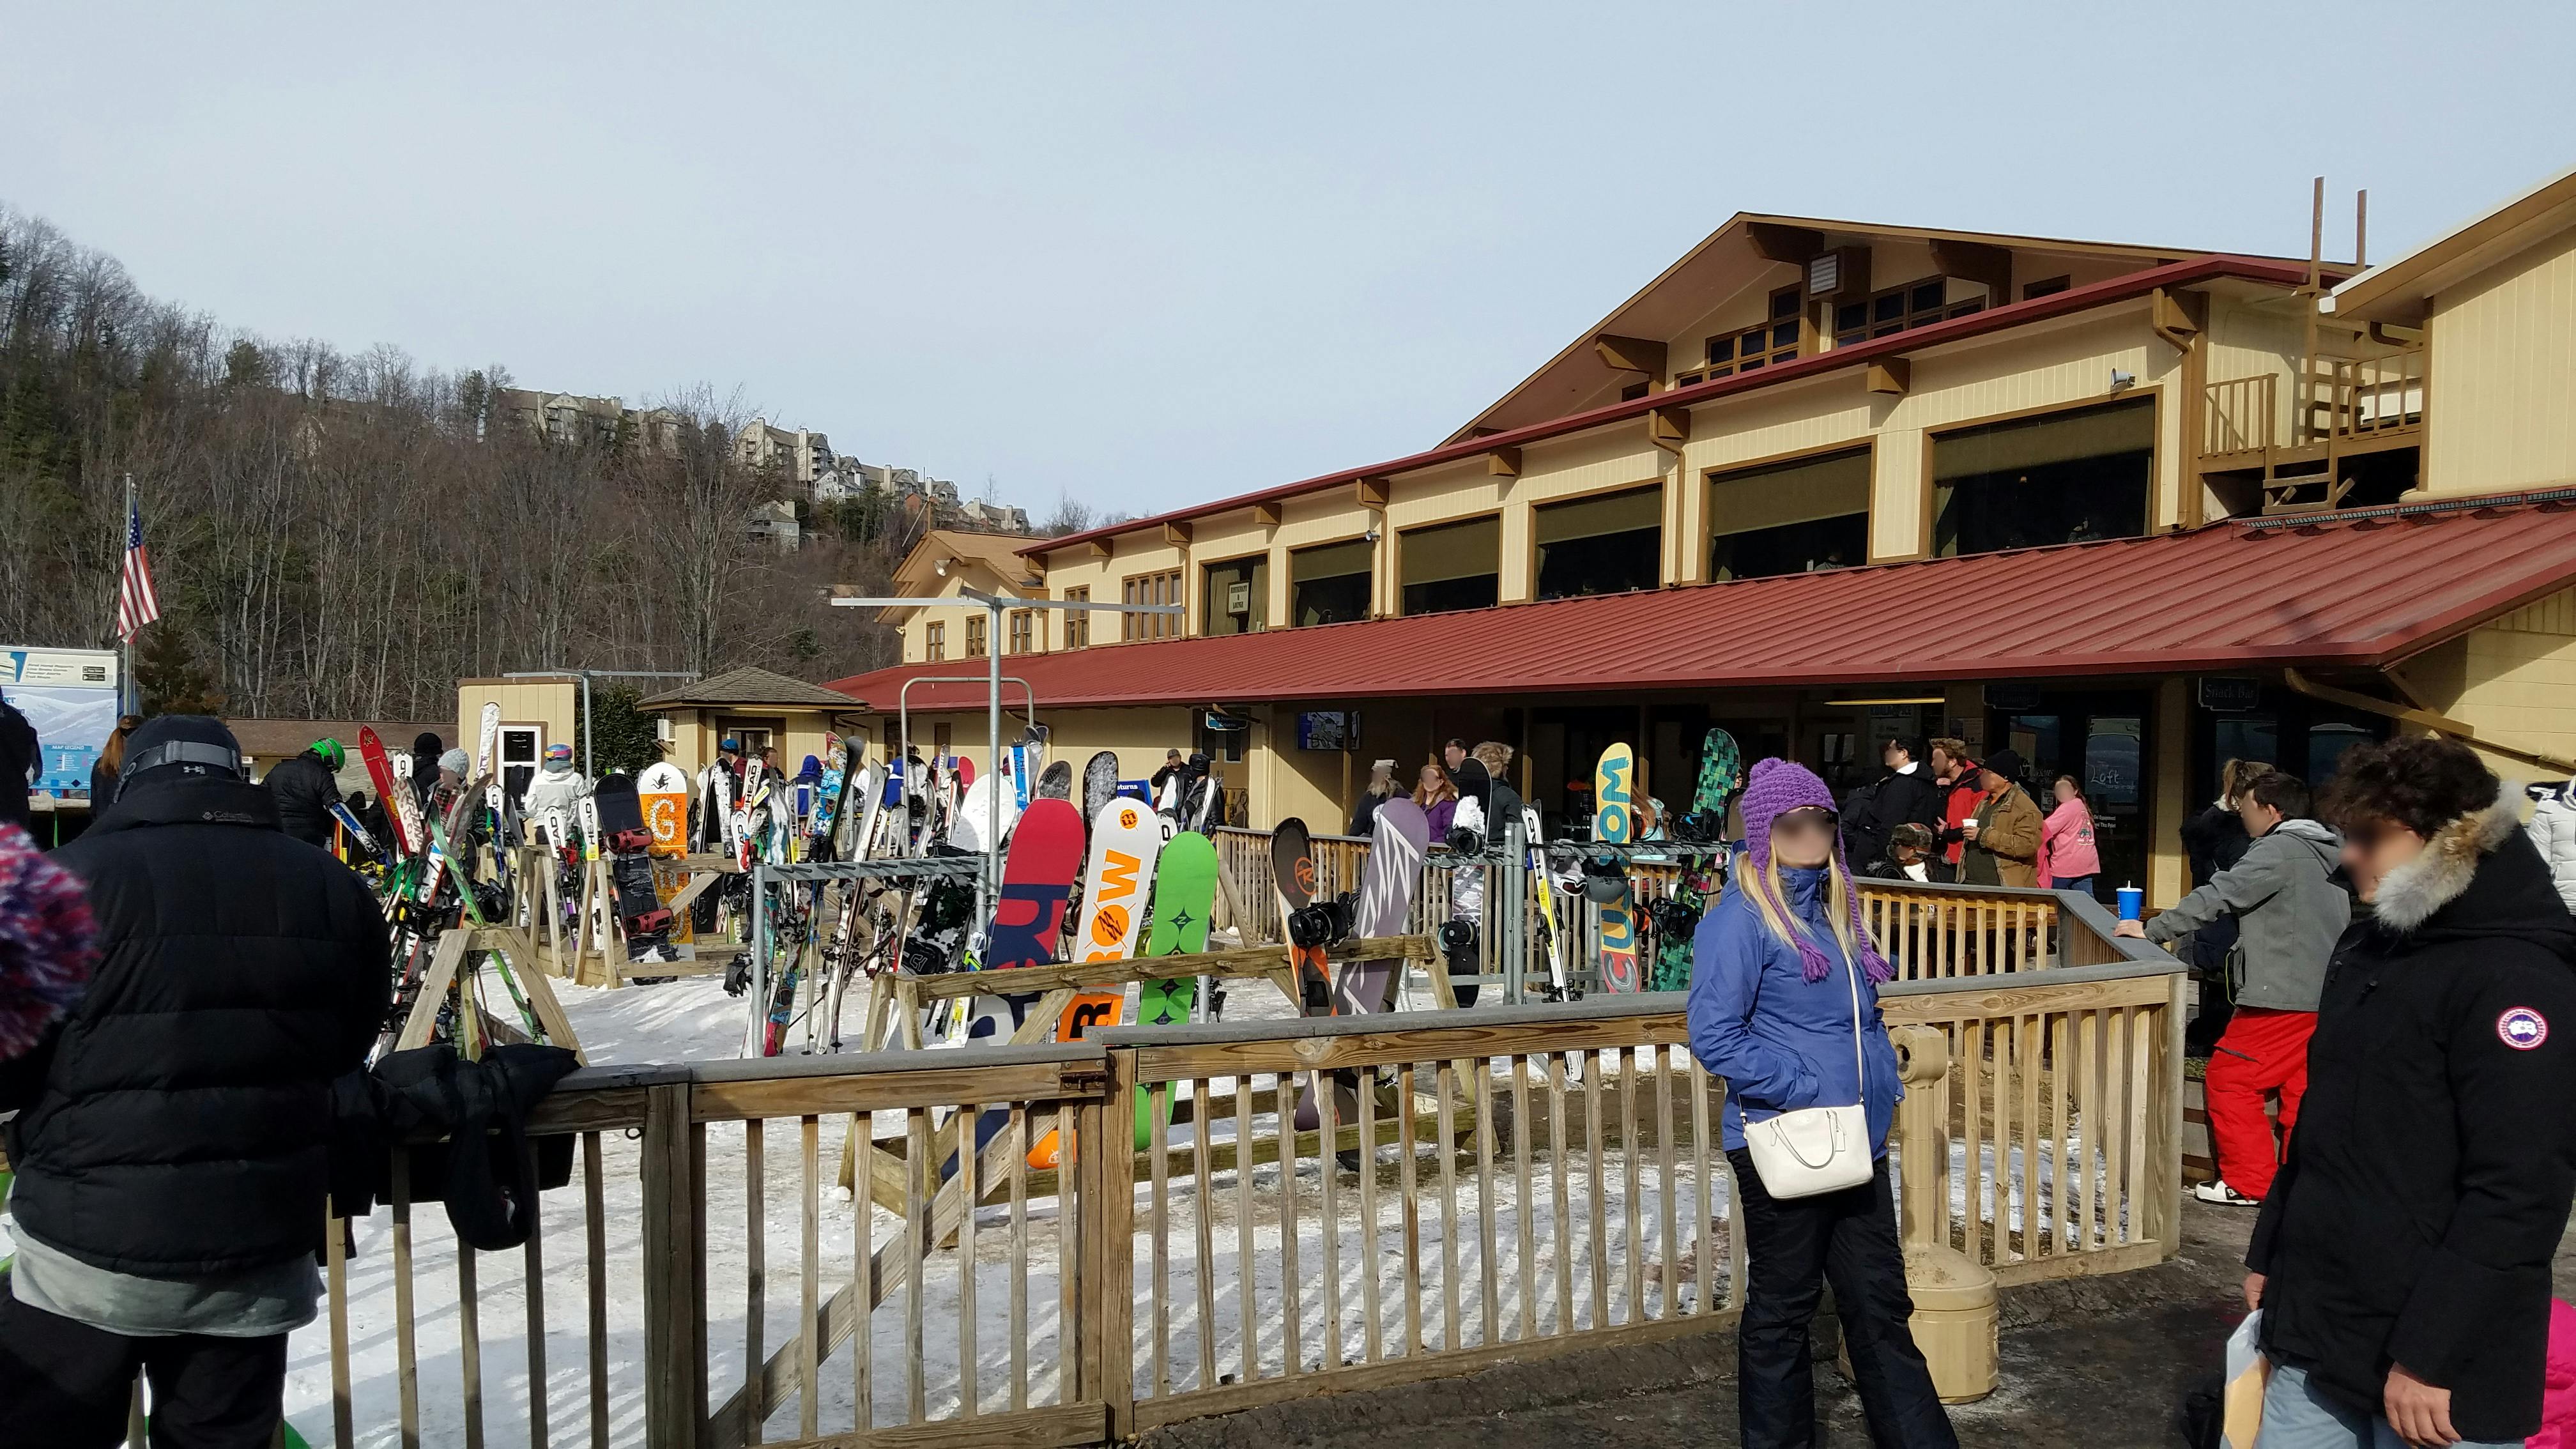 Free stock photo of mountains, ski lodge, snow boards